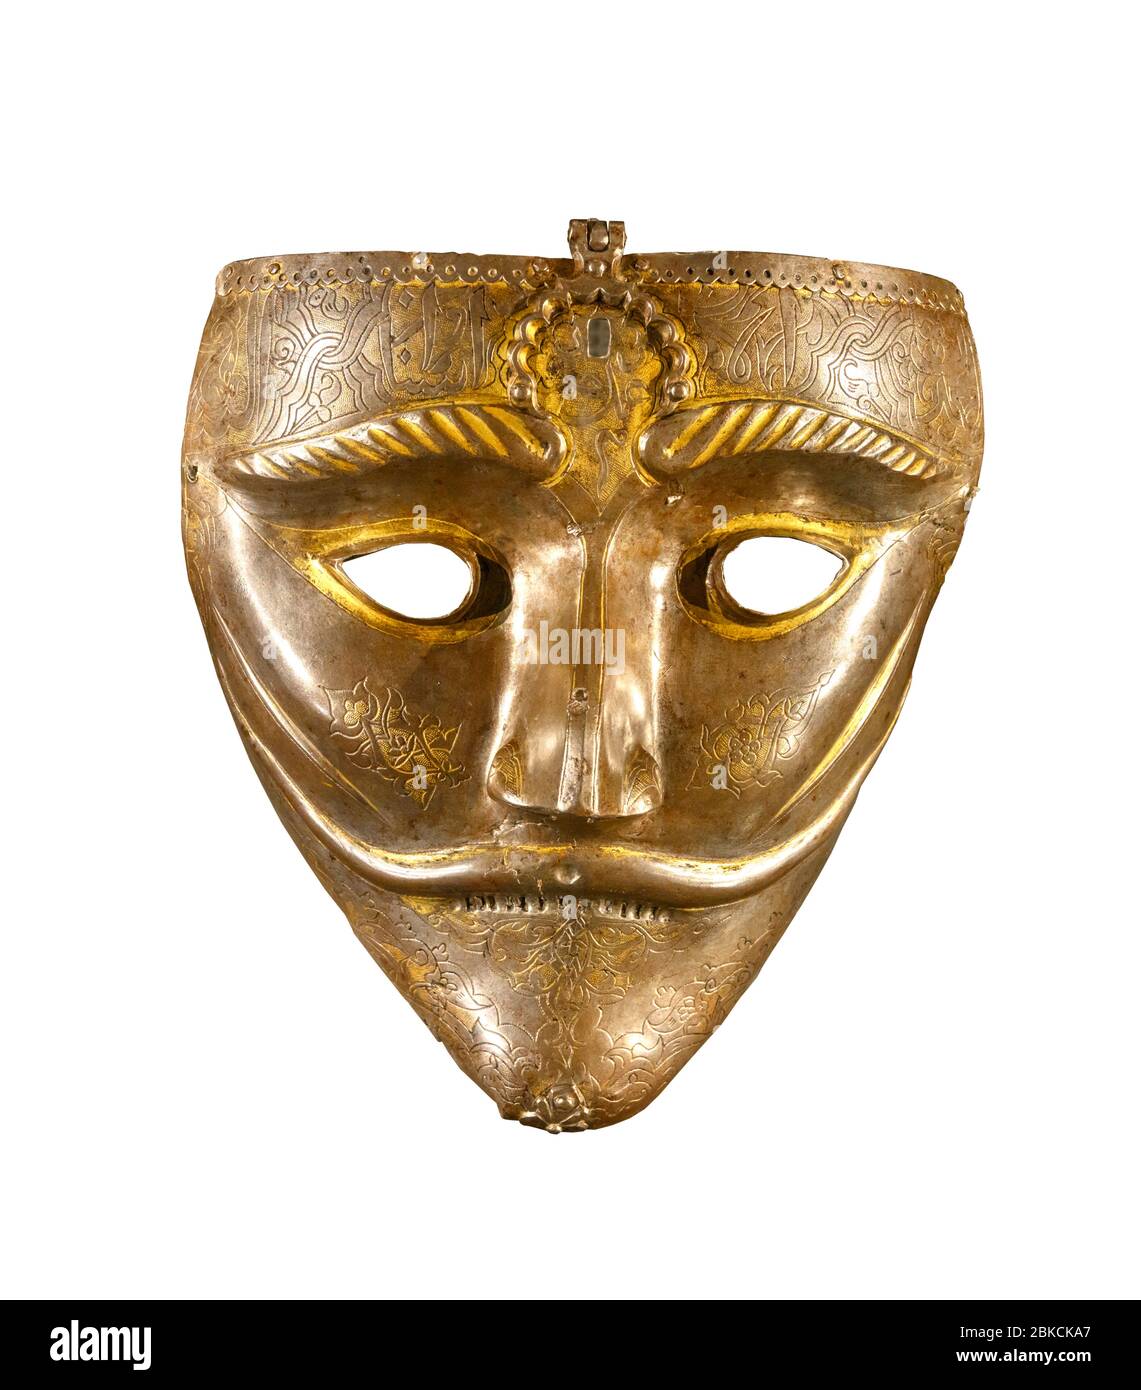 Masque de guerre de la Turquie orientale ou de l'Iran occidental, acier avec incrustations d'or, XVe siècle Banque D'Images